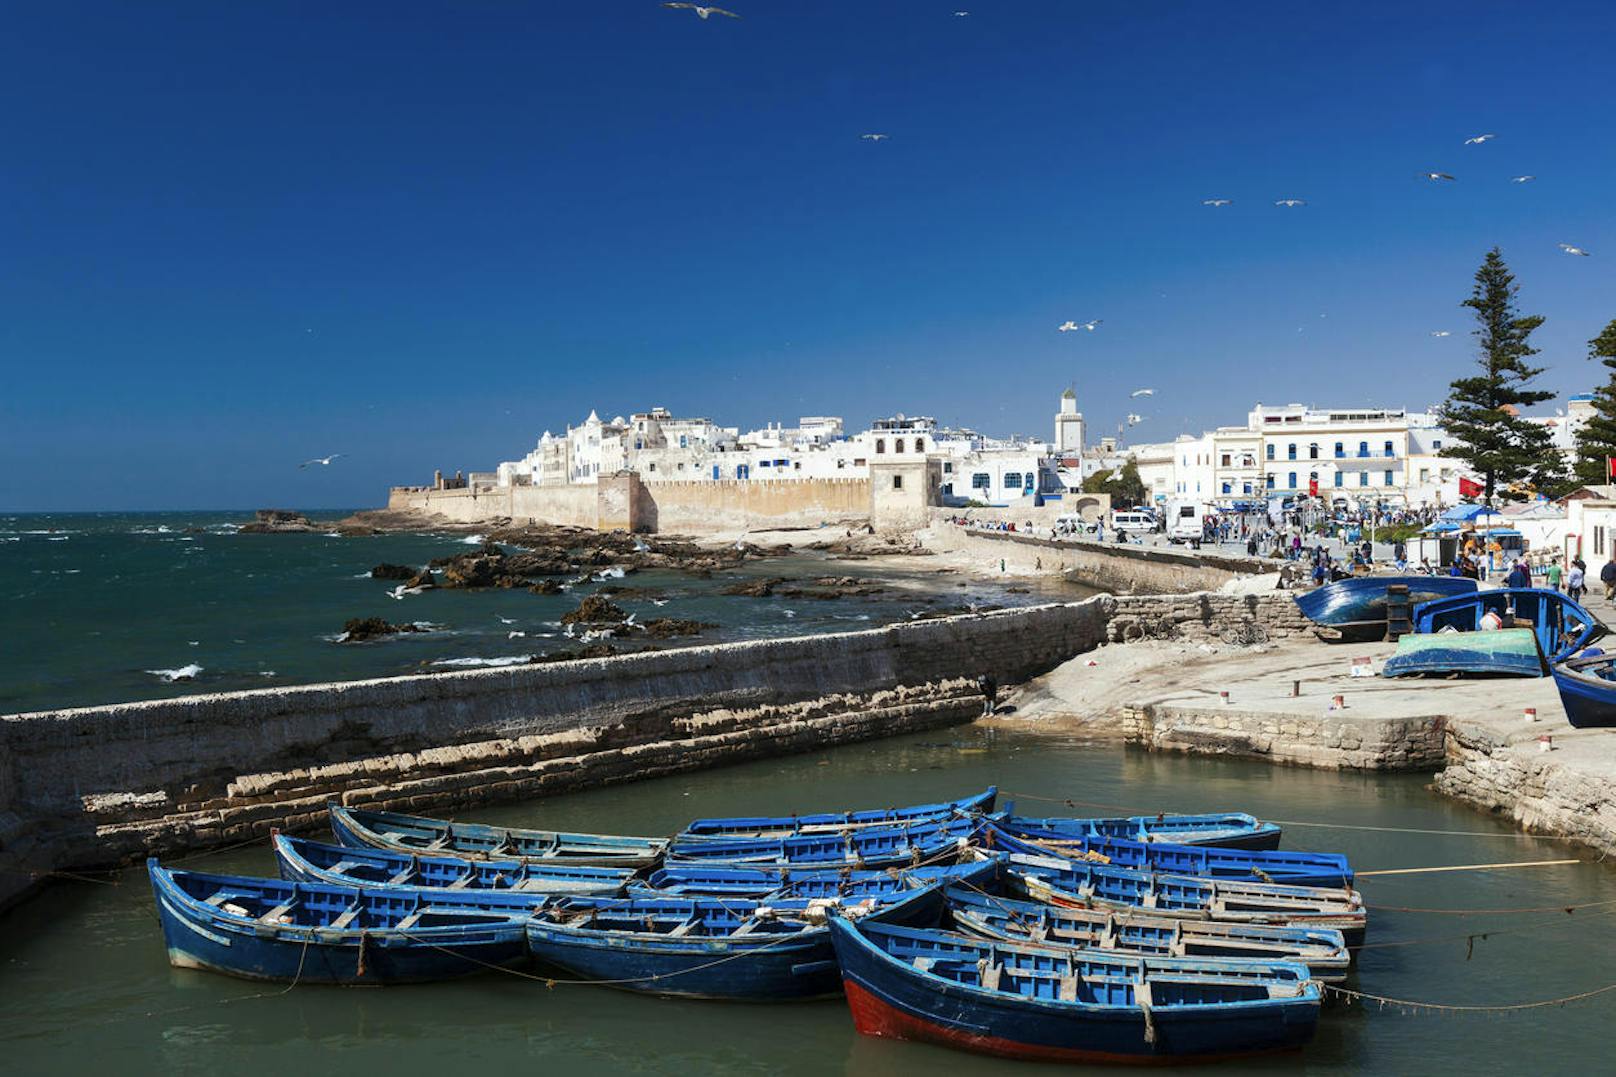 <b>Platz 6: Essaouira, Morokko</b>
Wer Marokko liebt, Marrakesch aber schon kennt, für den könnte Essaouira genau das Richtige sein, denn es ist noch ein preiswerter Ort in diesem sicheren Teil von Nordafrika. Und mittlerweile wird Essaouira auch direkt (und günstig) von Großbritannien und Frankreich aus angeflogen. Seine engen Gassen, die traditionellen Hammams sowie die Farben und Gerüche der Medina sorgen für eine geradezu sinnliche Atmosphäre. Dank der ständigen Brise gibts hervorragende Möglichkeiten zum Wind- und Kitesurfen und der Strand lädt zu erfrischenden Spaziergängen ein. Die charakteristischen Riads sind erschwinglich, insbesondere für Familien oder Gruppen. Und das Beste: Auch für den kleinen Geldbeutel gibts sensationelles Essen - besonders die frischen Meeresfrüchte.